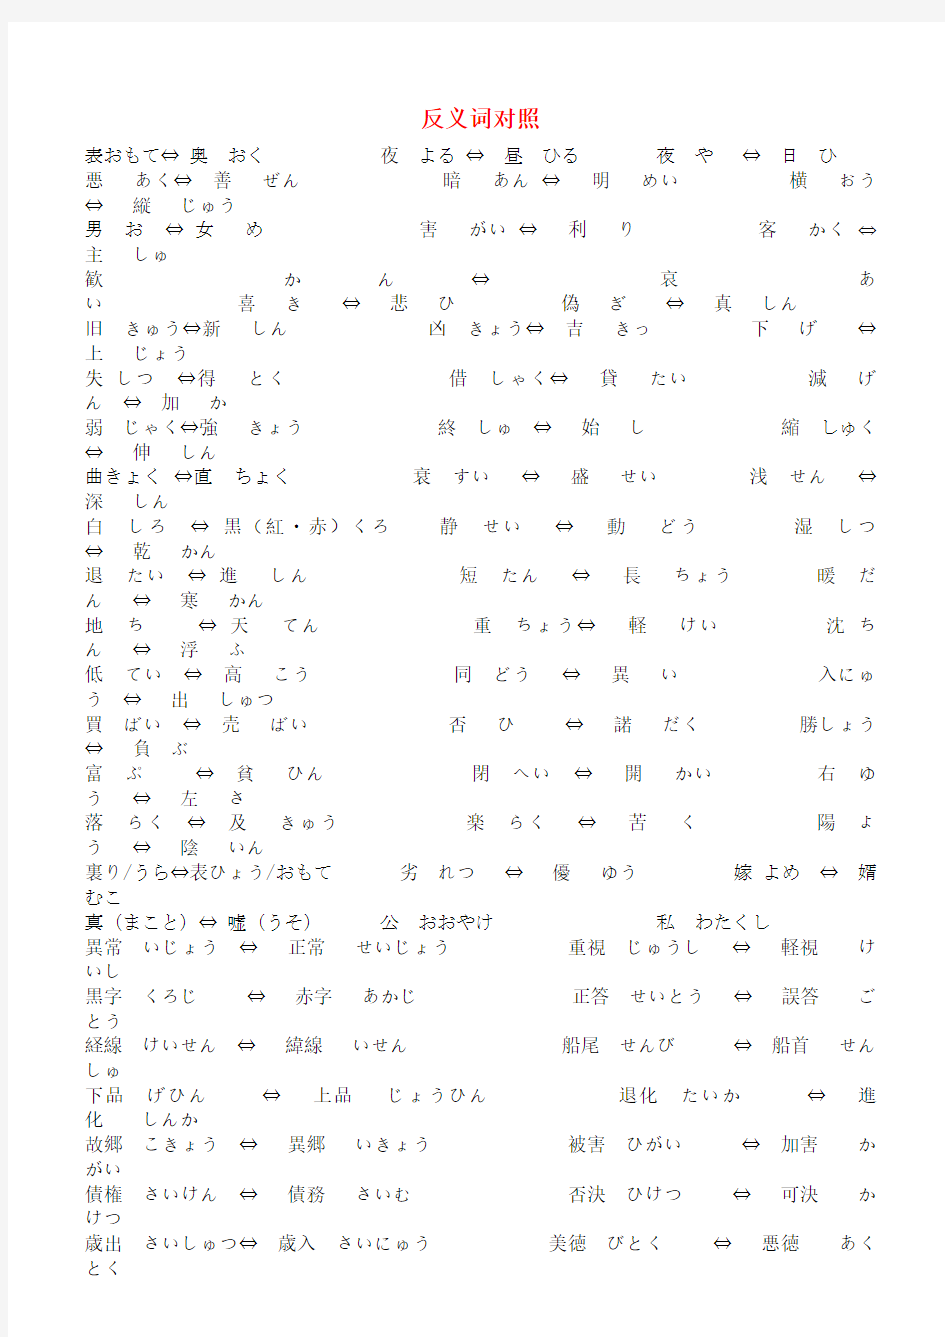 分类记忆日语单词大全